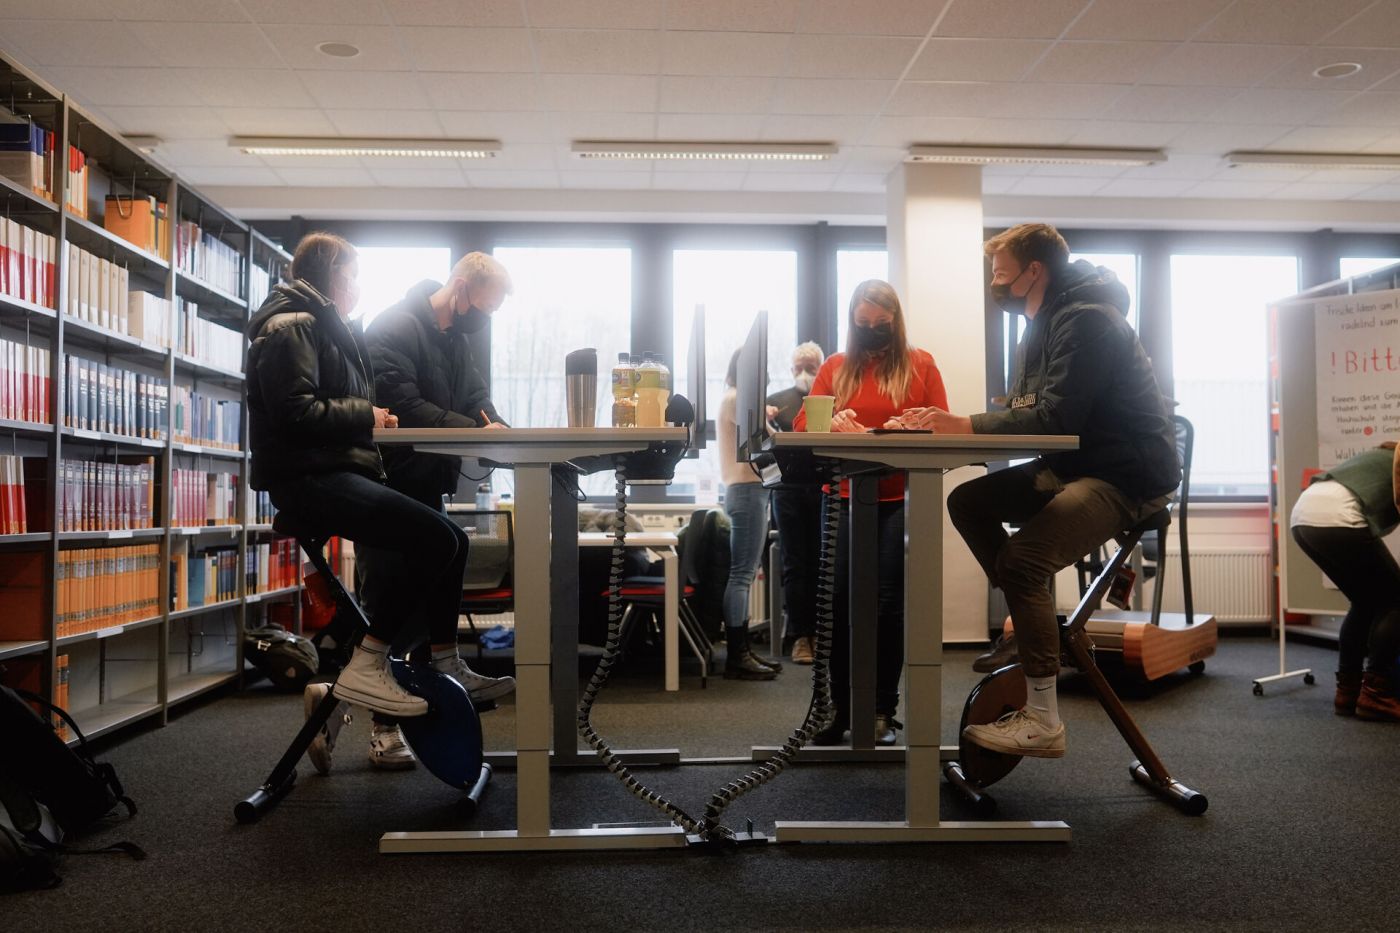 Studierende probieren die Deskbikes aus: Trimmdichräder, auf denen sie fahren können, während sie am Schreibtisch arbeiten.